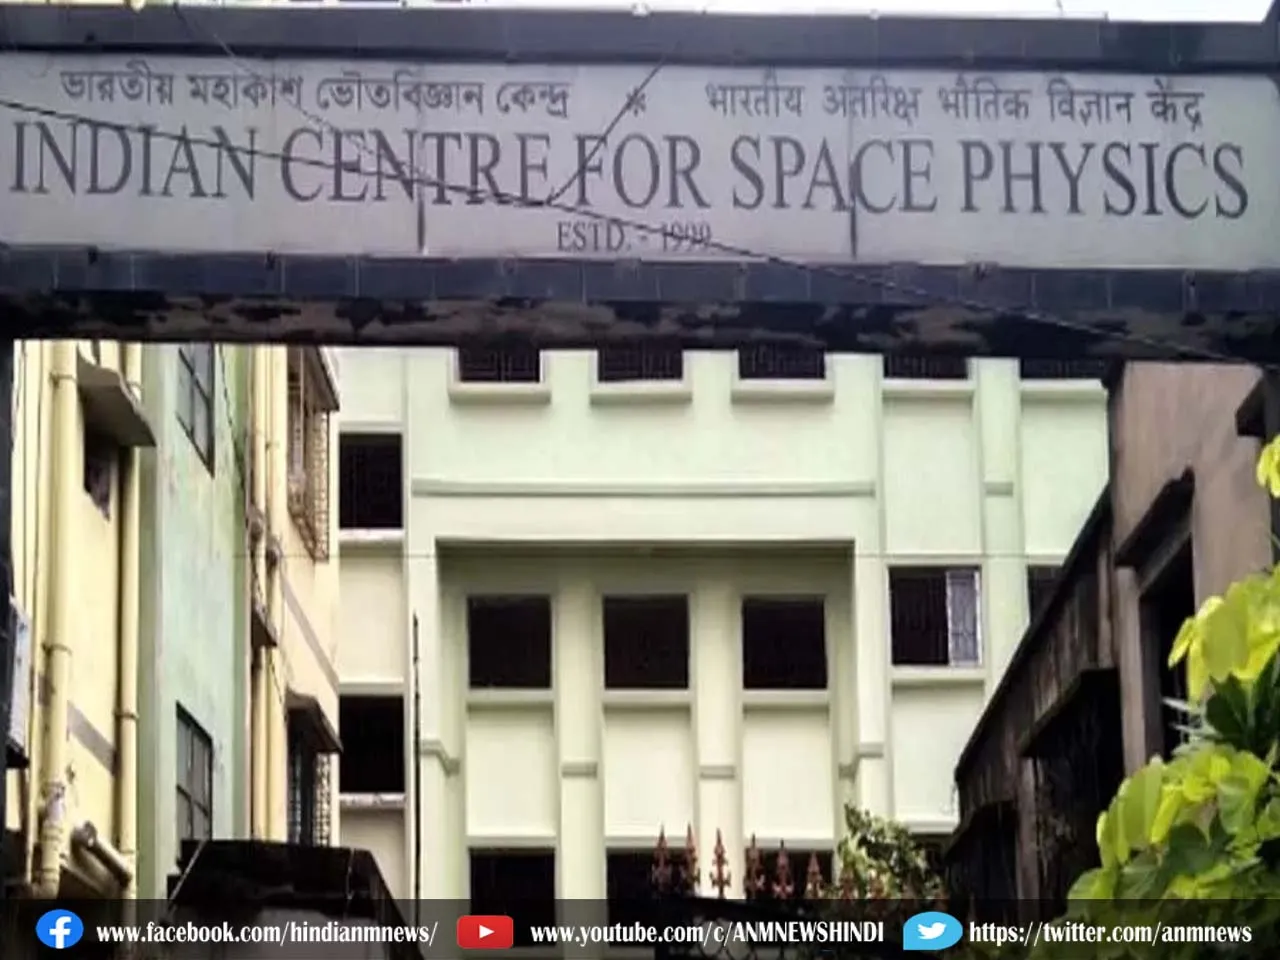 Kolkata: न्यू कोलकाता संग्रहालय में मंगल ग्रह की चट्टानें और वैज्ञानिकों की निजी डायरियां